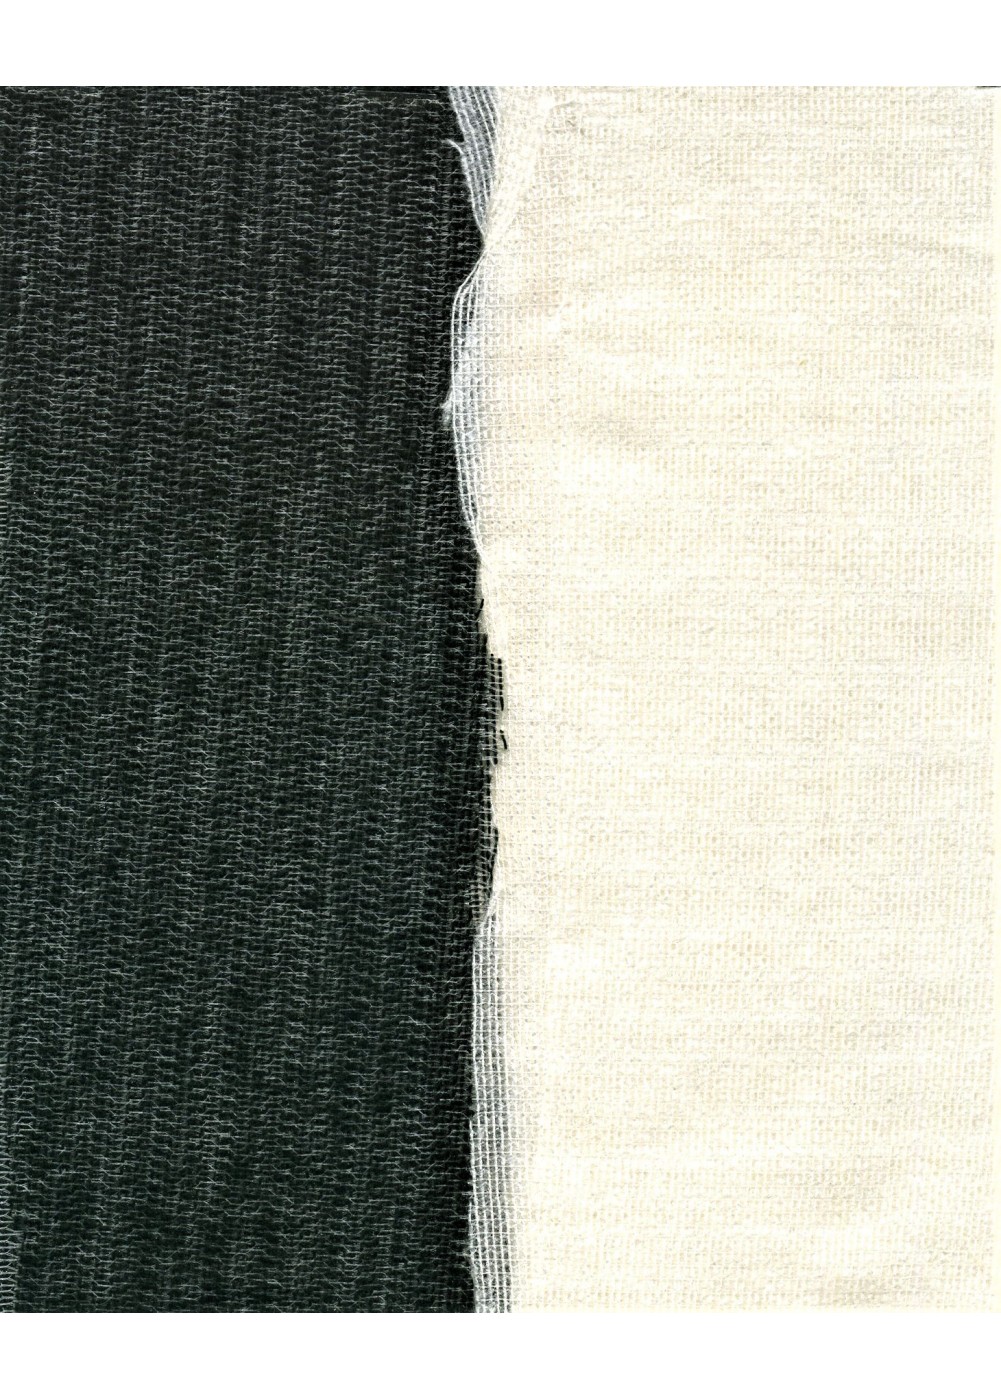 THERMO ADHESIVE TEXTILE 150 cm WHITE - BLACK